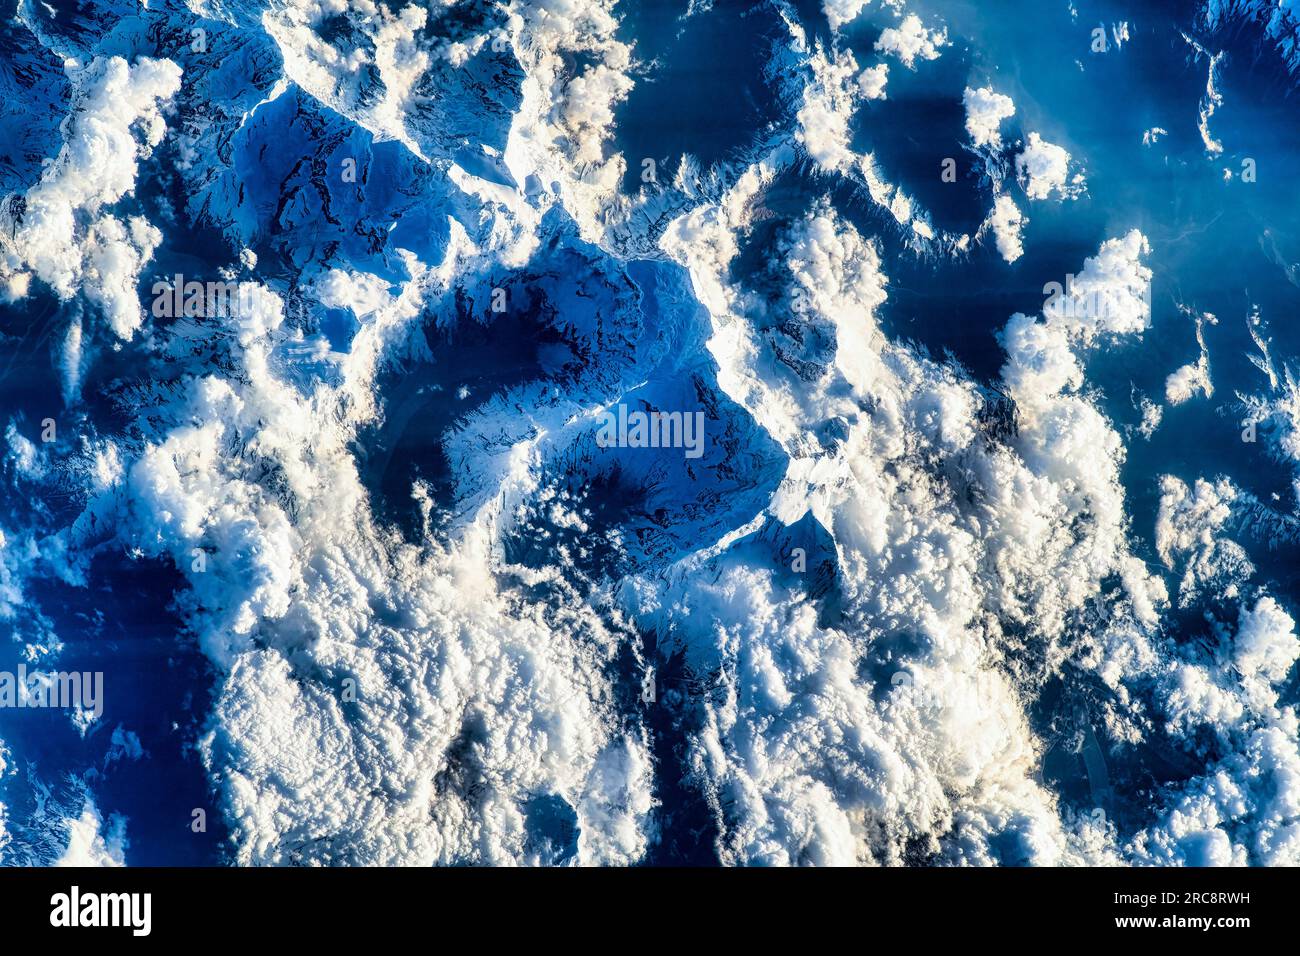 Wolken und schneebedeckte Berge des Himalaya Gebirges. Bild der NASA. Richtlinien zur Verwendung von Medien: https://www.nasa.gov/multimedia/guidelines/ind Stockfoto